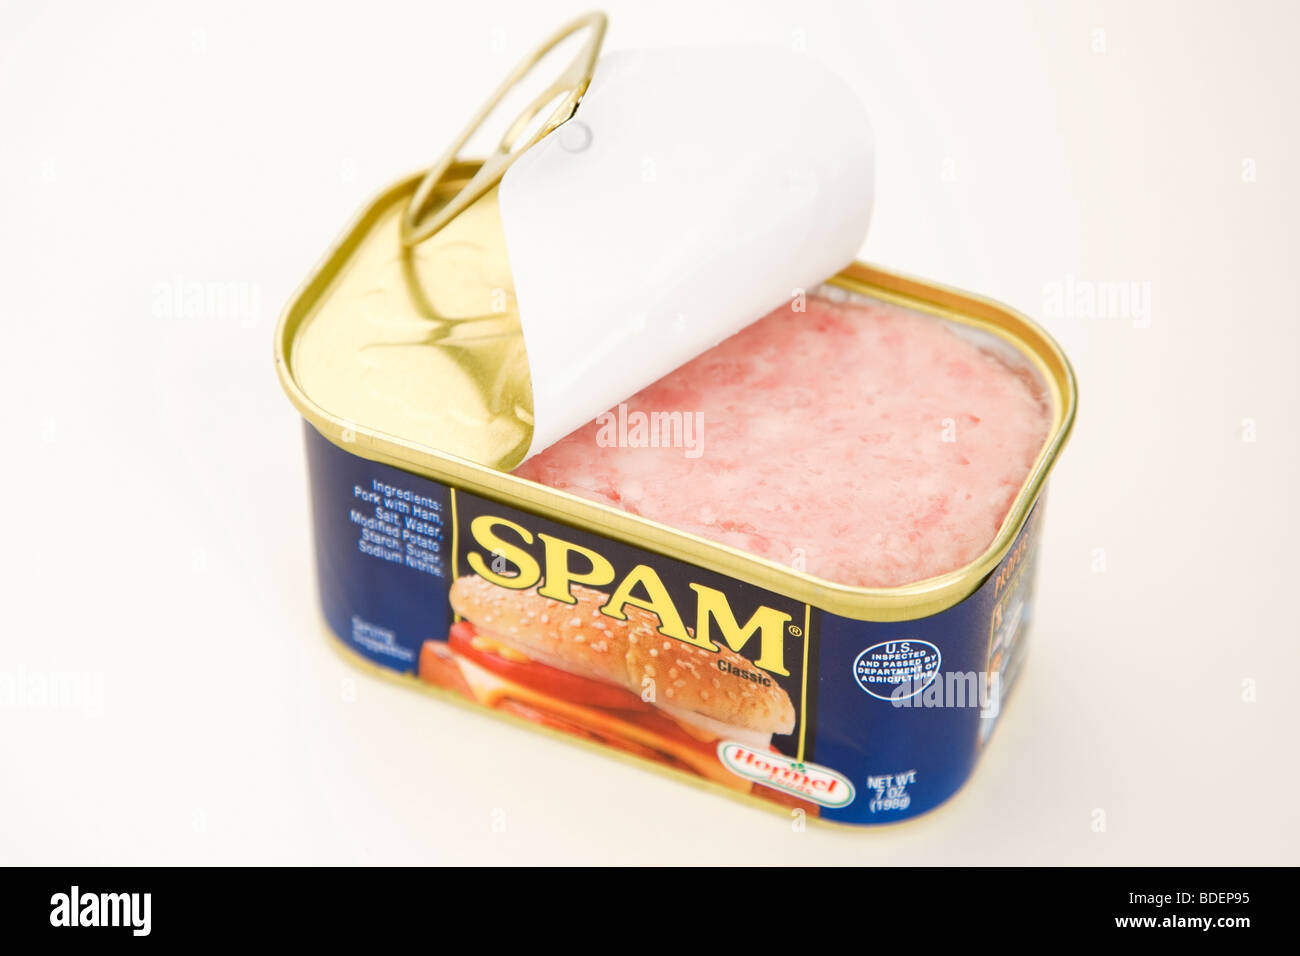 Canned spam immagini e fotografie stock ad alta risoluzione - Alamy